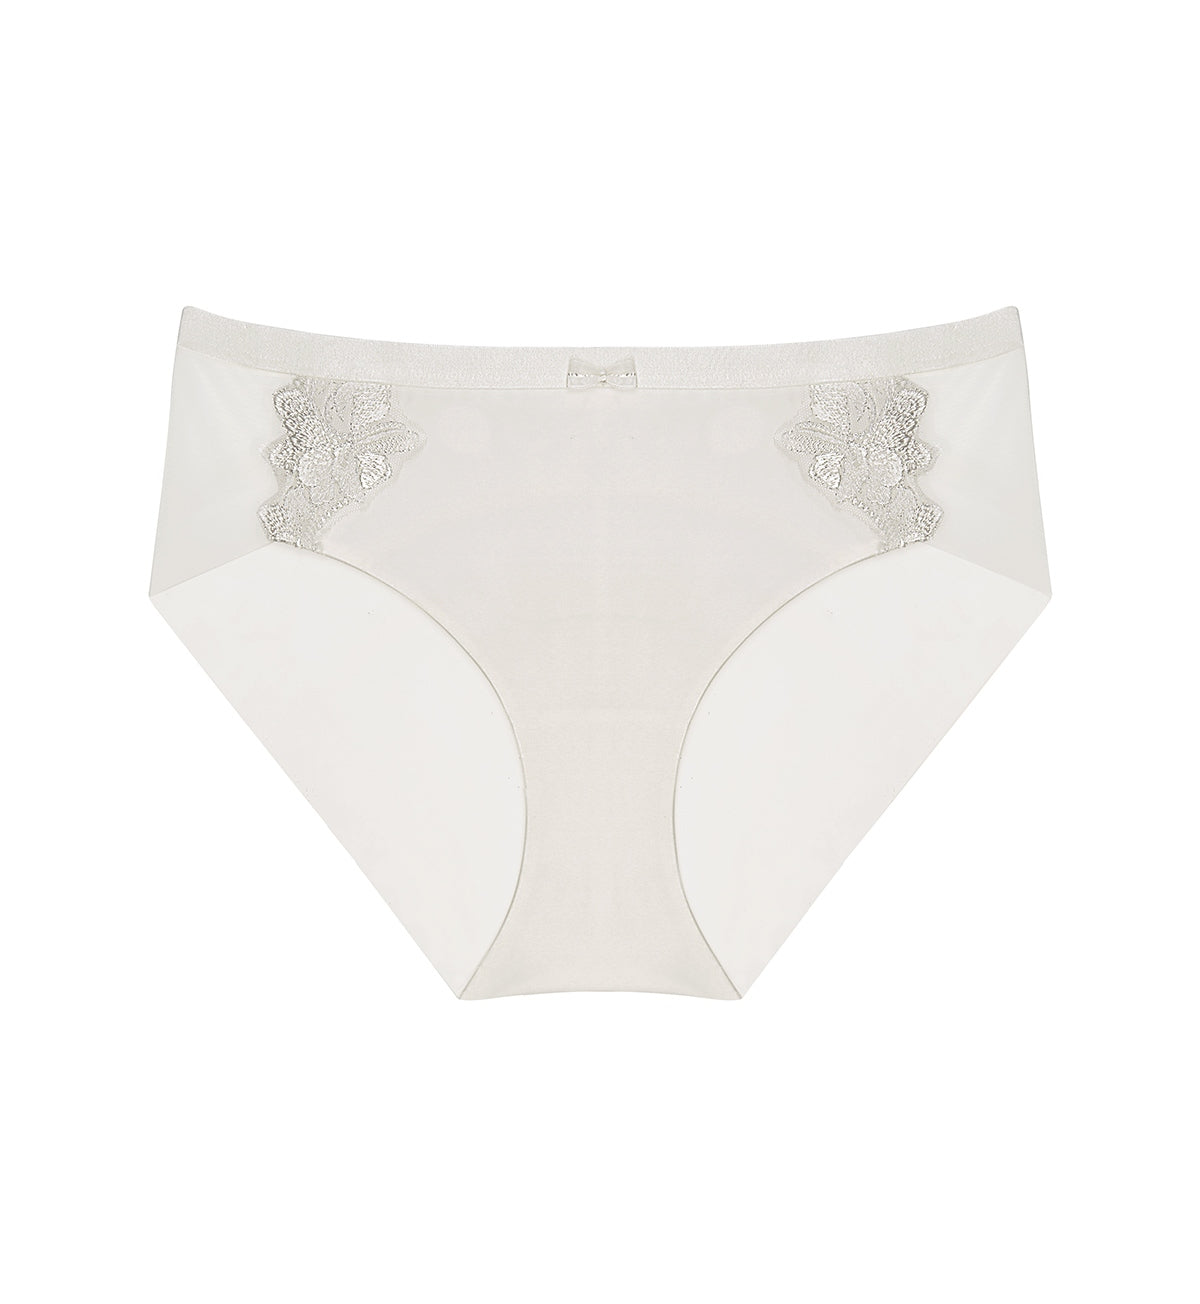 GNEPH Women Underwear Cotton Panties Plus Size Vietnam